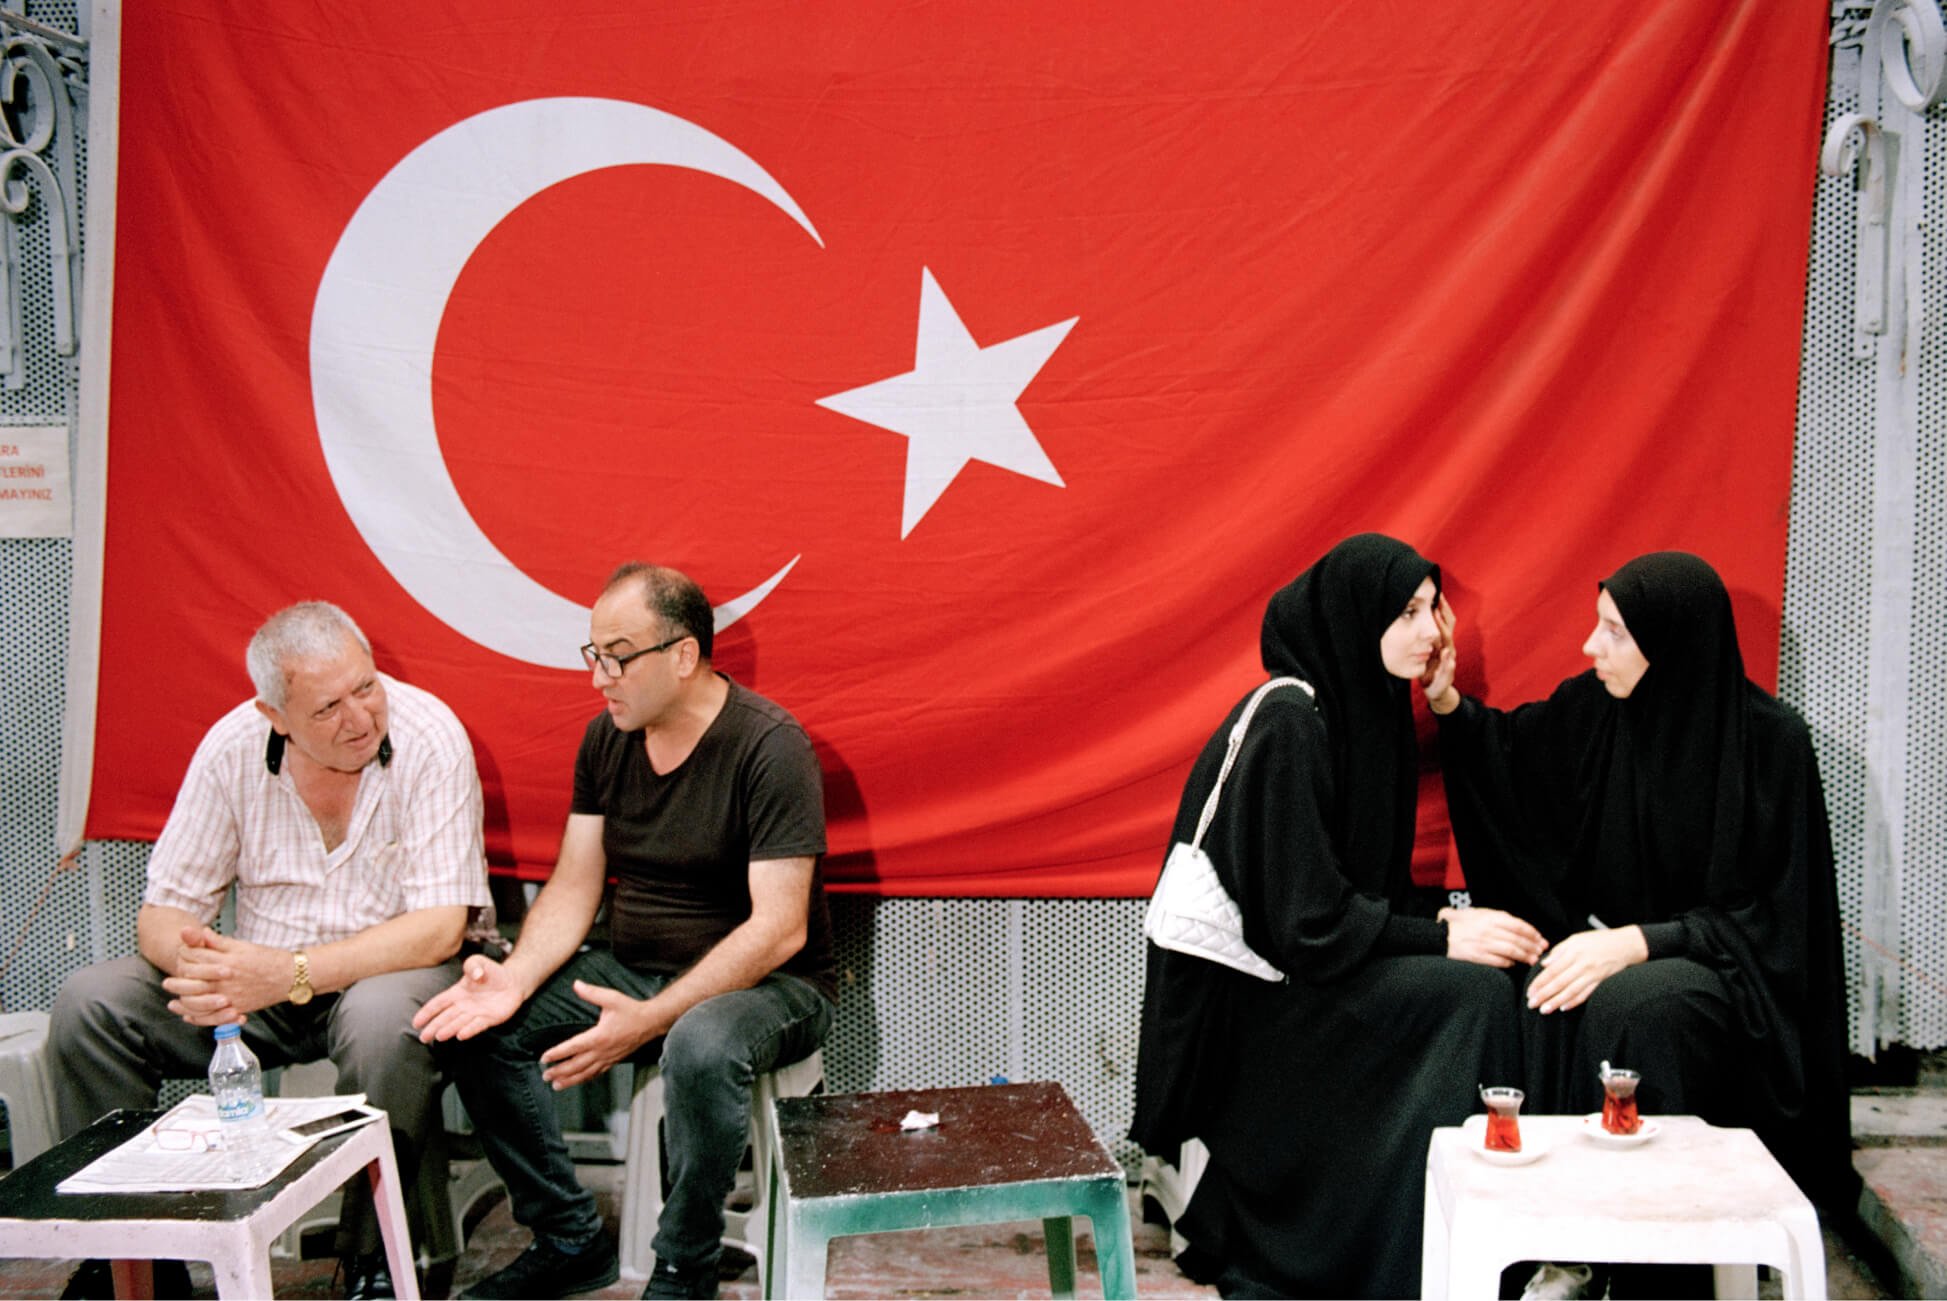 Dos hombres y dos mujeres con velo se sientan separados en una tienda de té con la bandera de Turquía en el fondo.